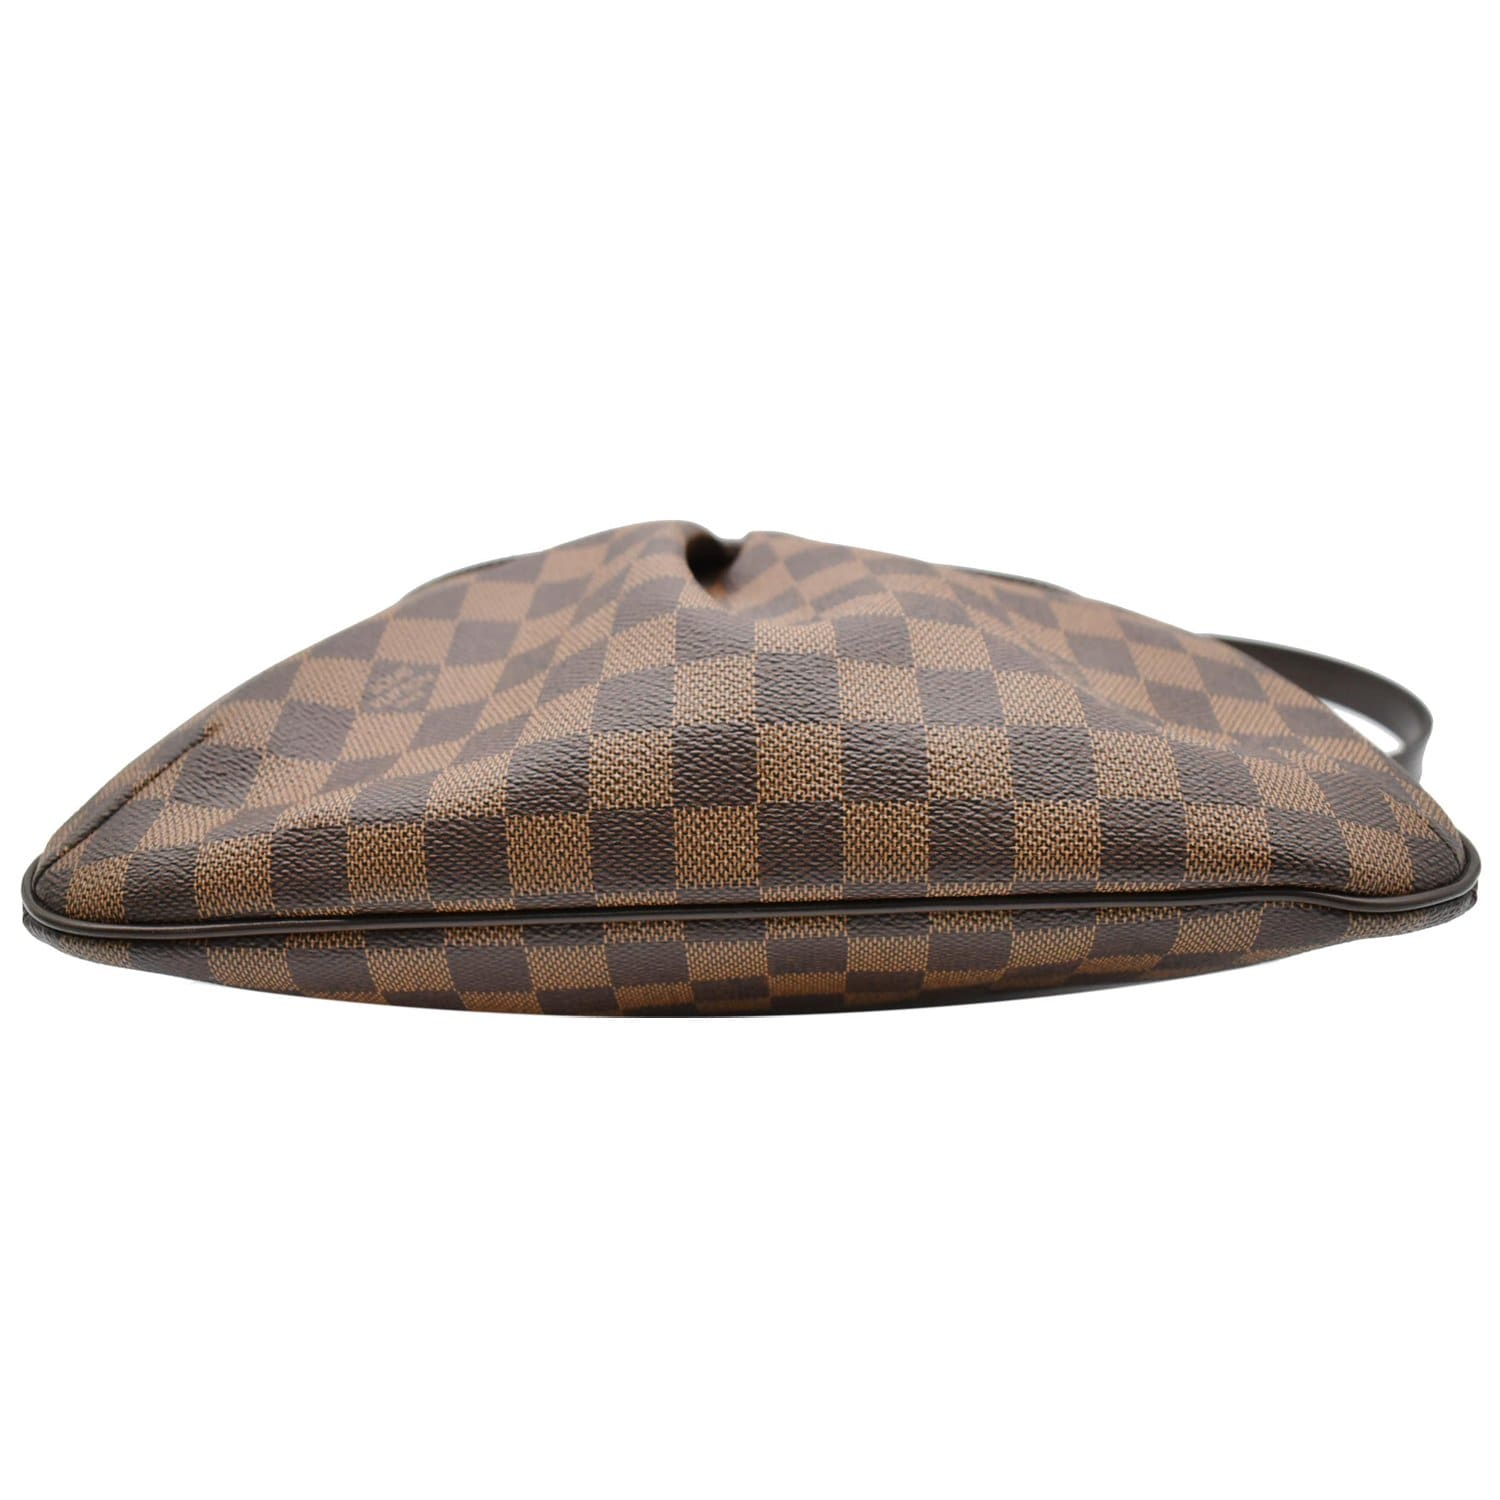 Louis Vuitton - Damier Ebene Bloomsbury PM - Crossbody bag - Catawiki